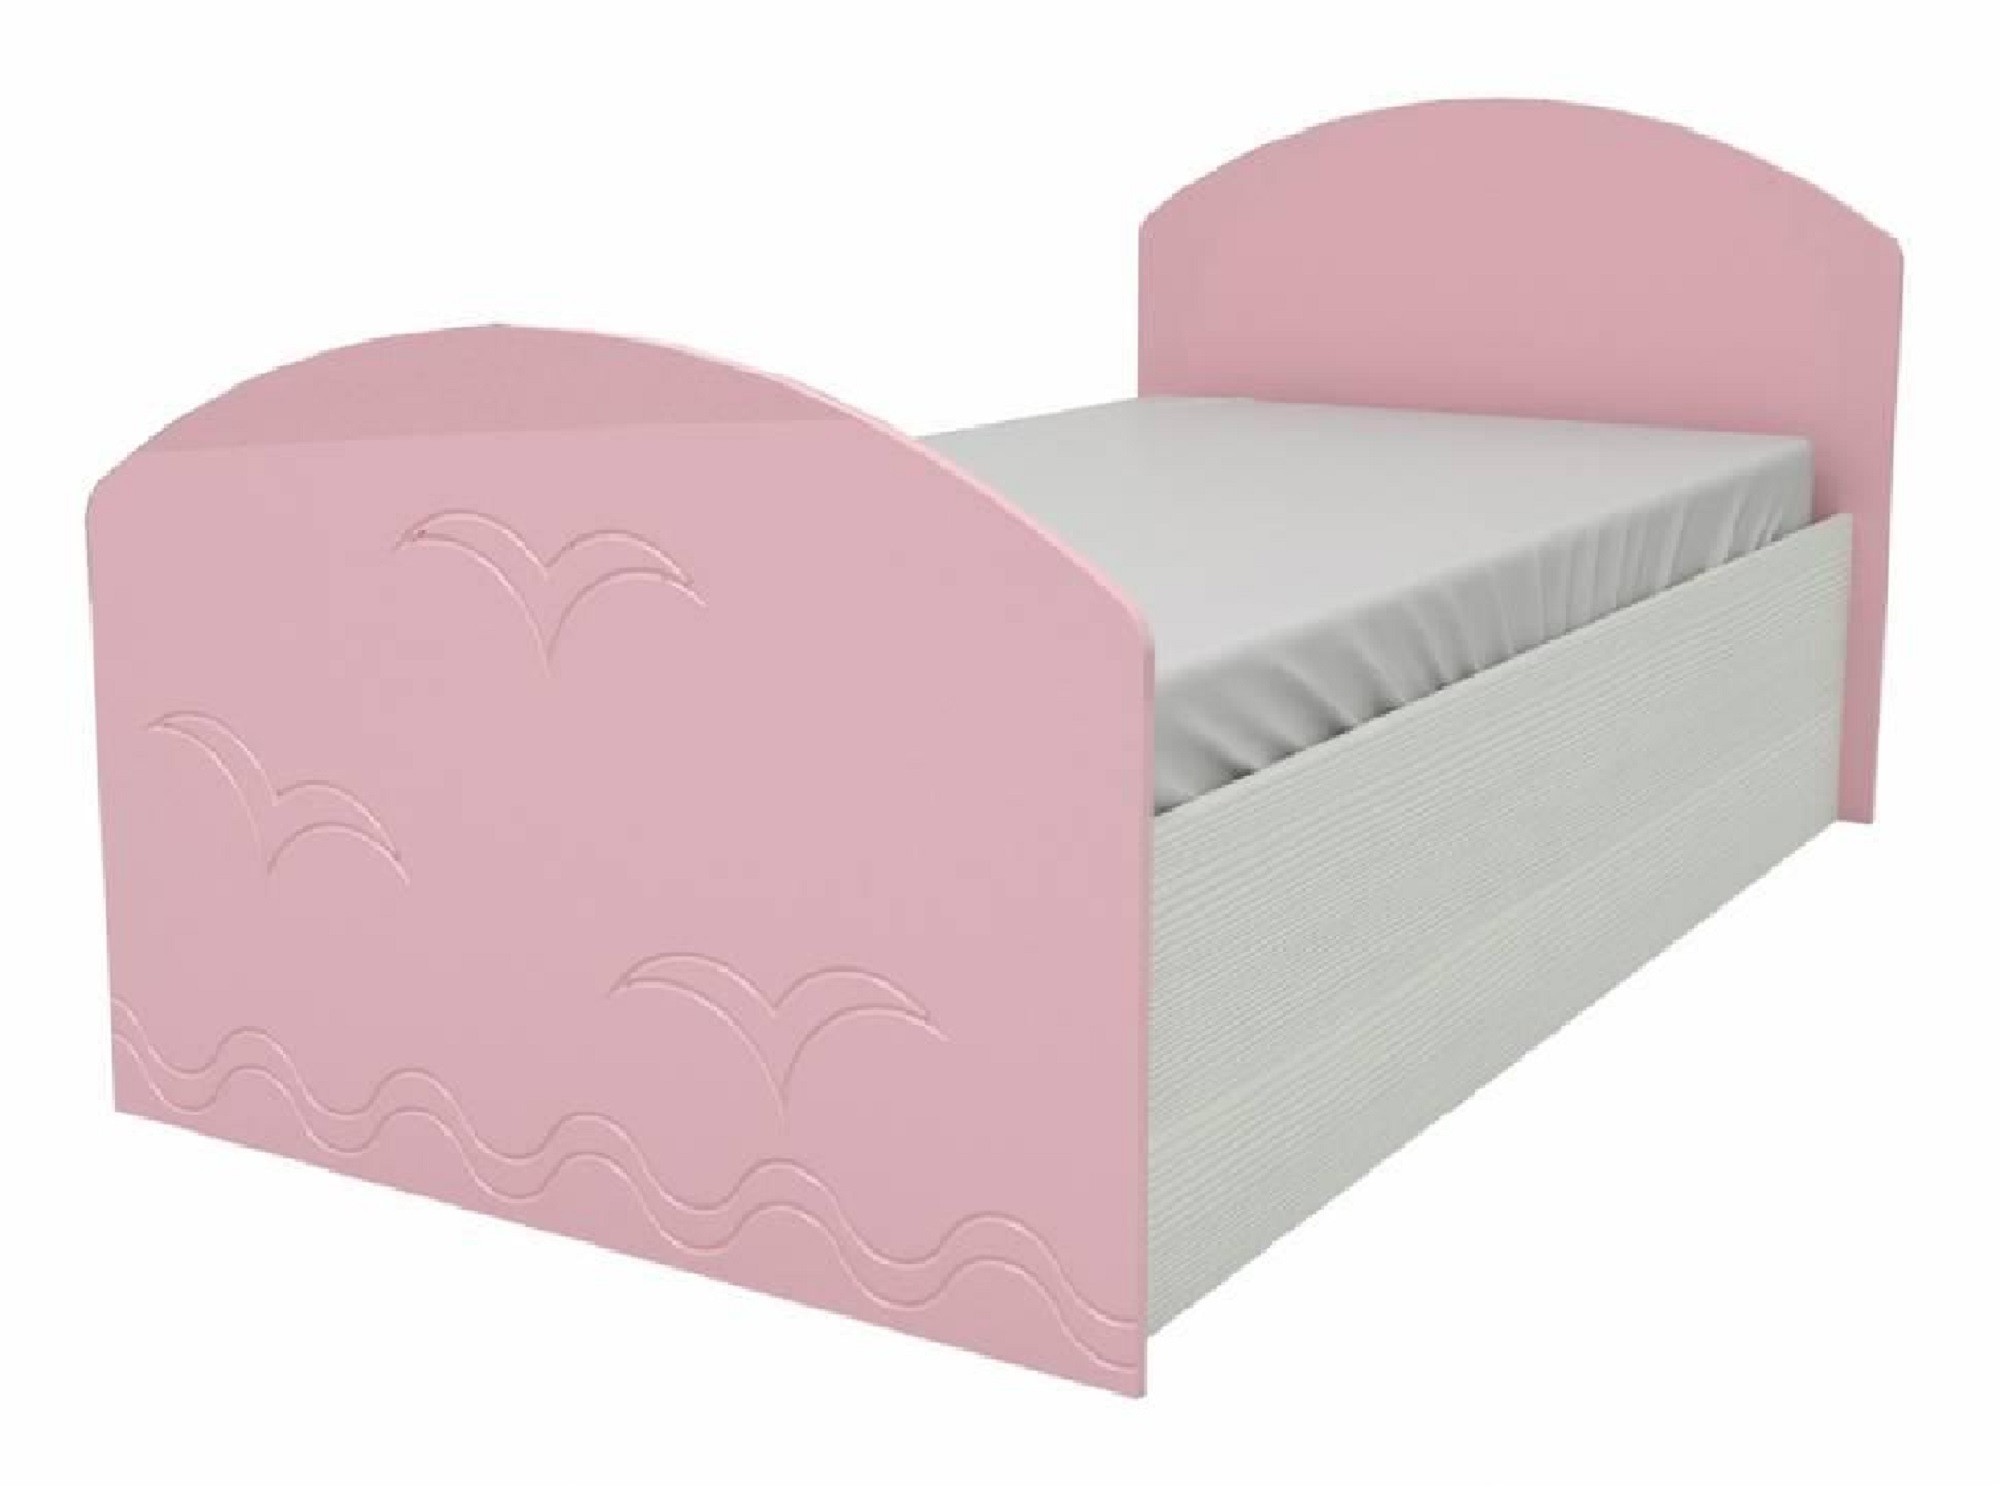 Юниор-2 Детская кровать 80, металлик (Розовый металлик, Дуб белёный) Розовый металлик, МДФ, ЛДСП юниор 2 стенка металлик розовый металлик дуб белёный розовый металлик мдф лдсп